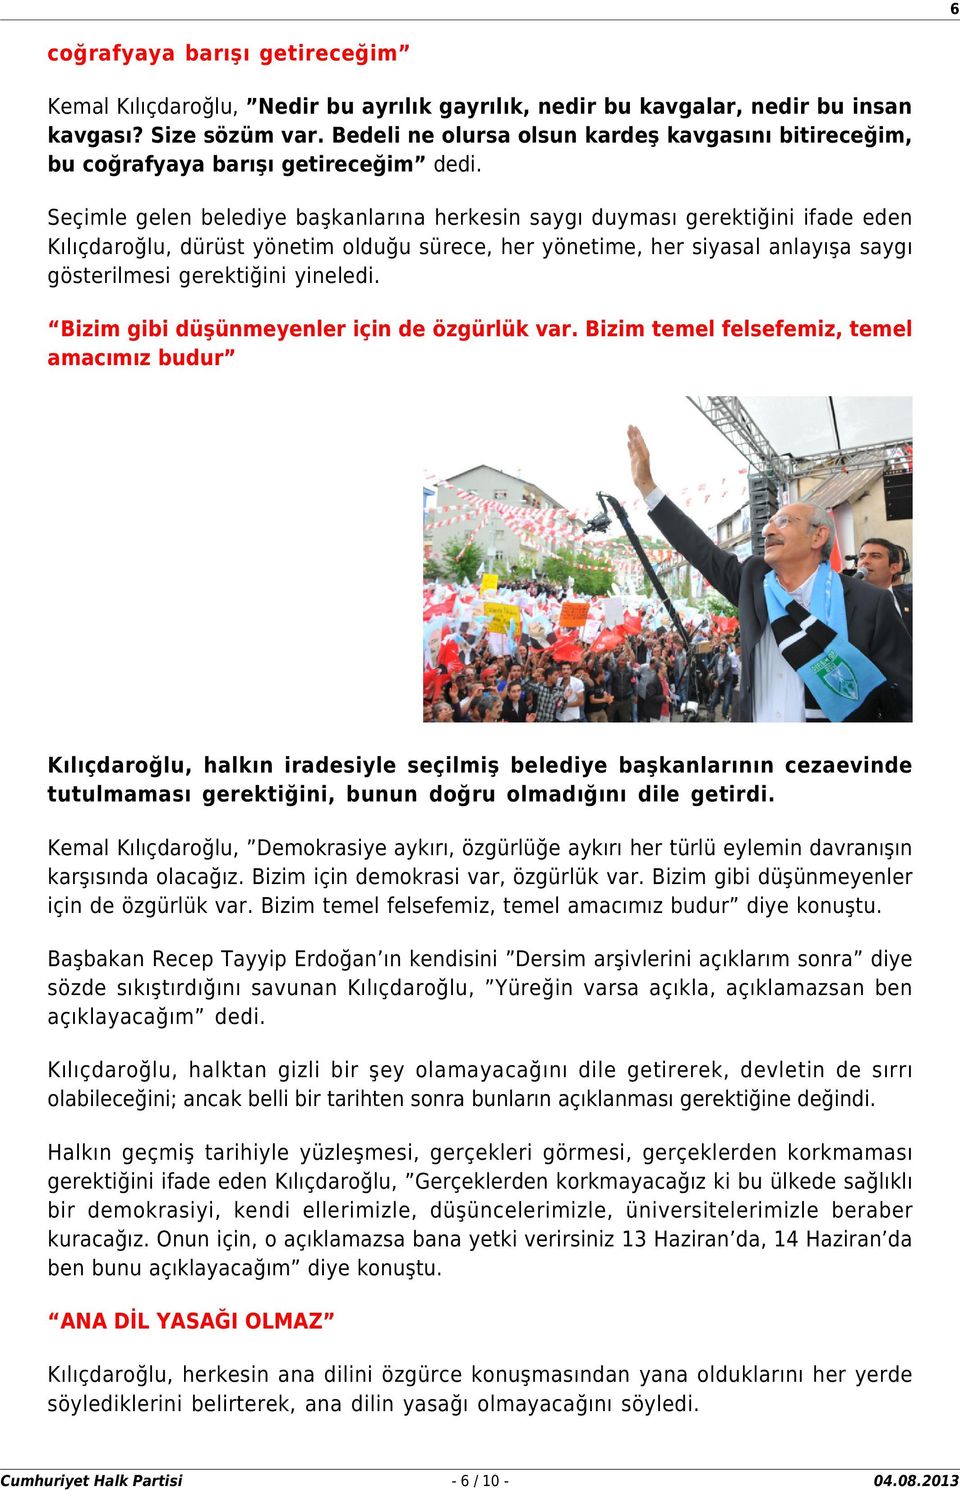 Seçimle gelen belediye başkanlarına herkesin saygı duyması gerektiğini ifade eden Kılıçdaroğlu, dürüst yönetim olduğu sürece, her yönetime, her siyasal anlayışa saygı gösterilmesi gerektiğini